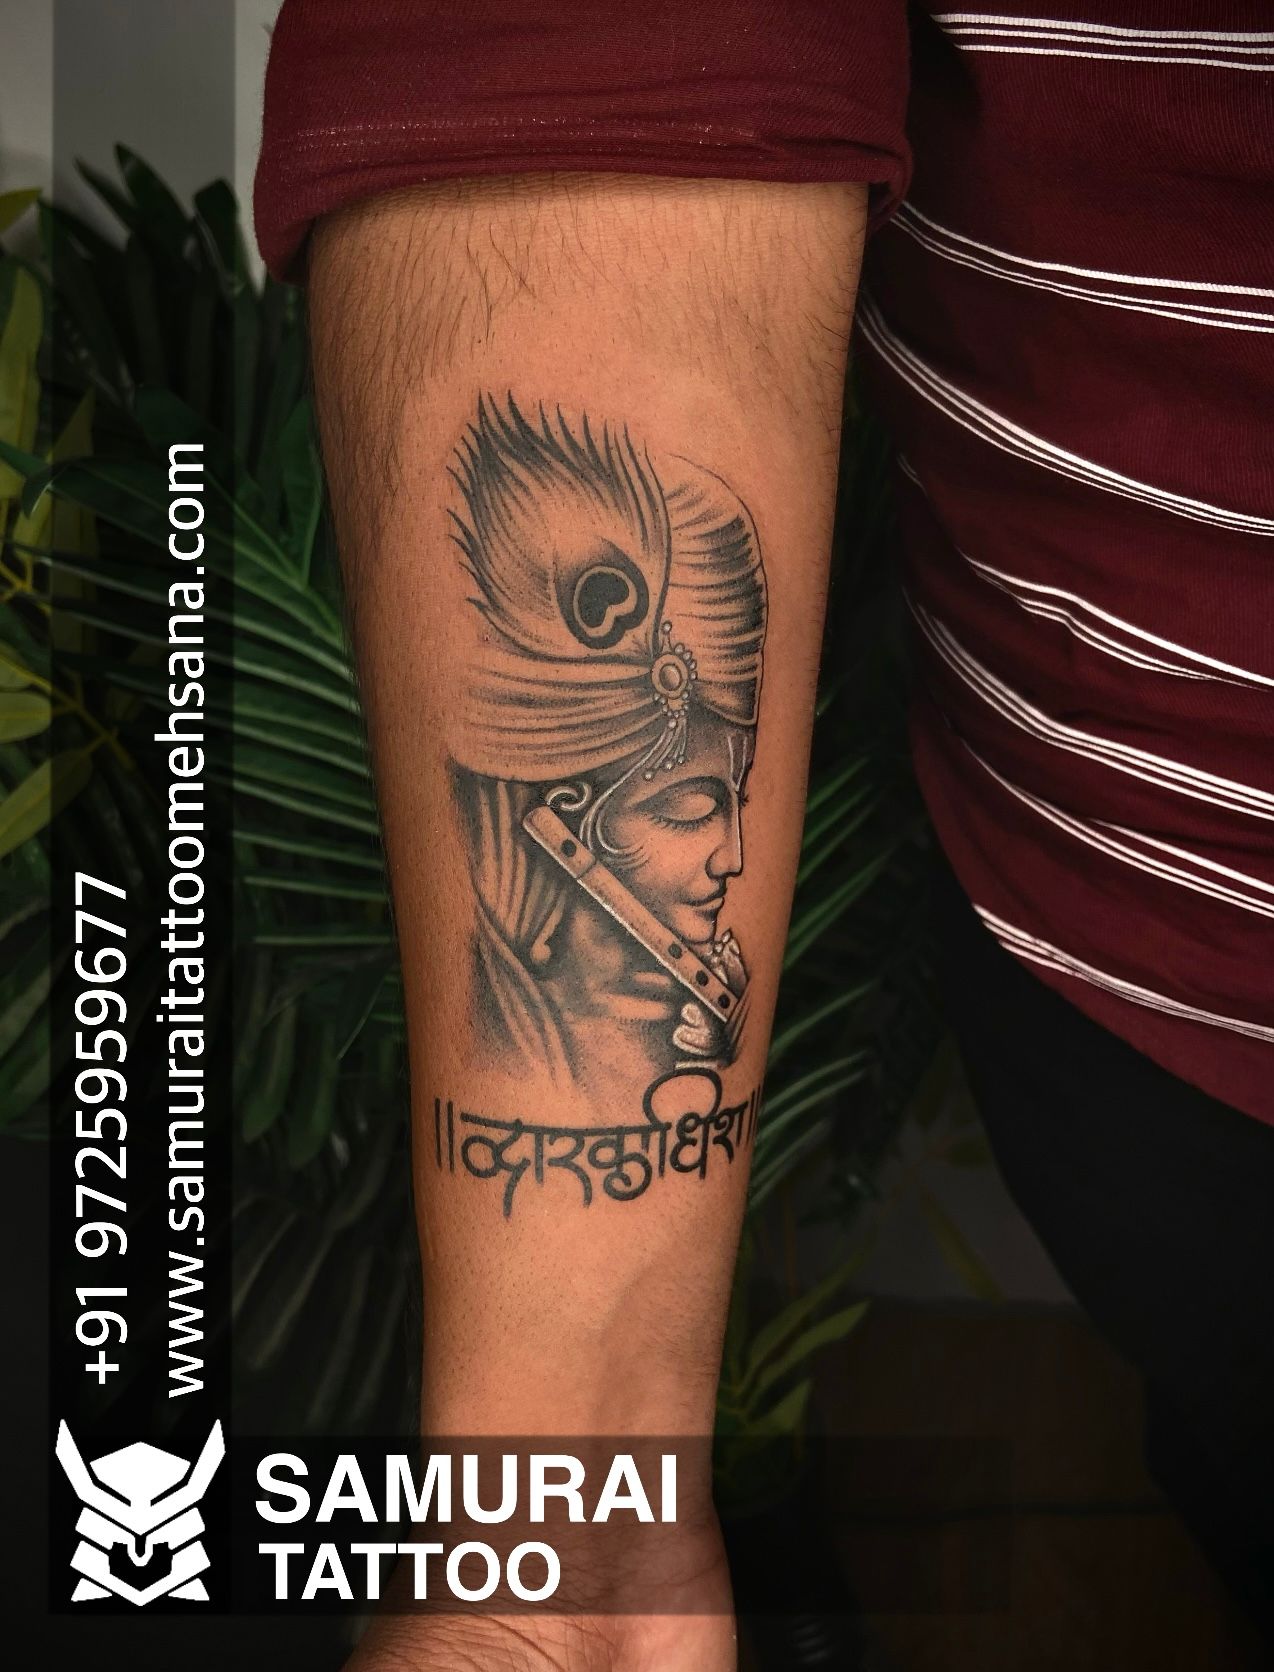 samurai tattoo mehsana on Twitter Krishna tattoo Tattoo for krishna  Dwarkadhish tattoo Lord krishna tattoo Krishna ji tattoo  httpstcoGwYsaf3VaM  Twitter